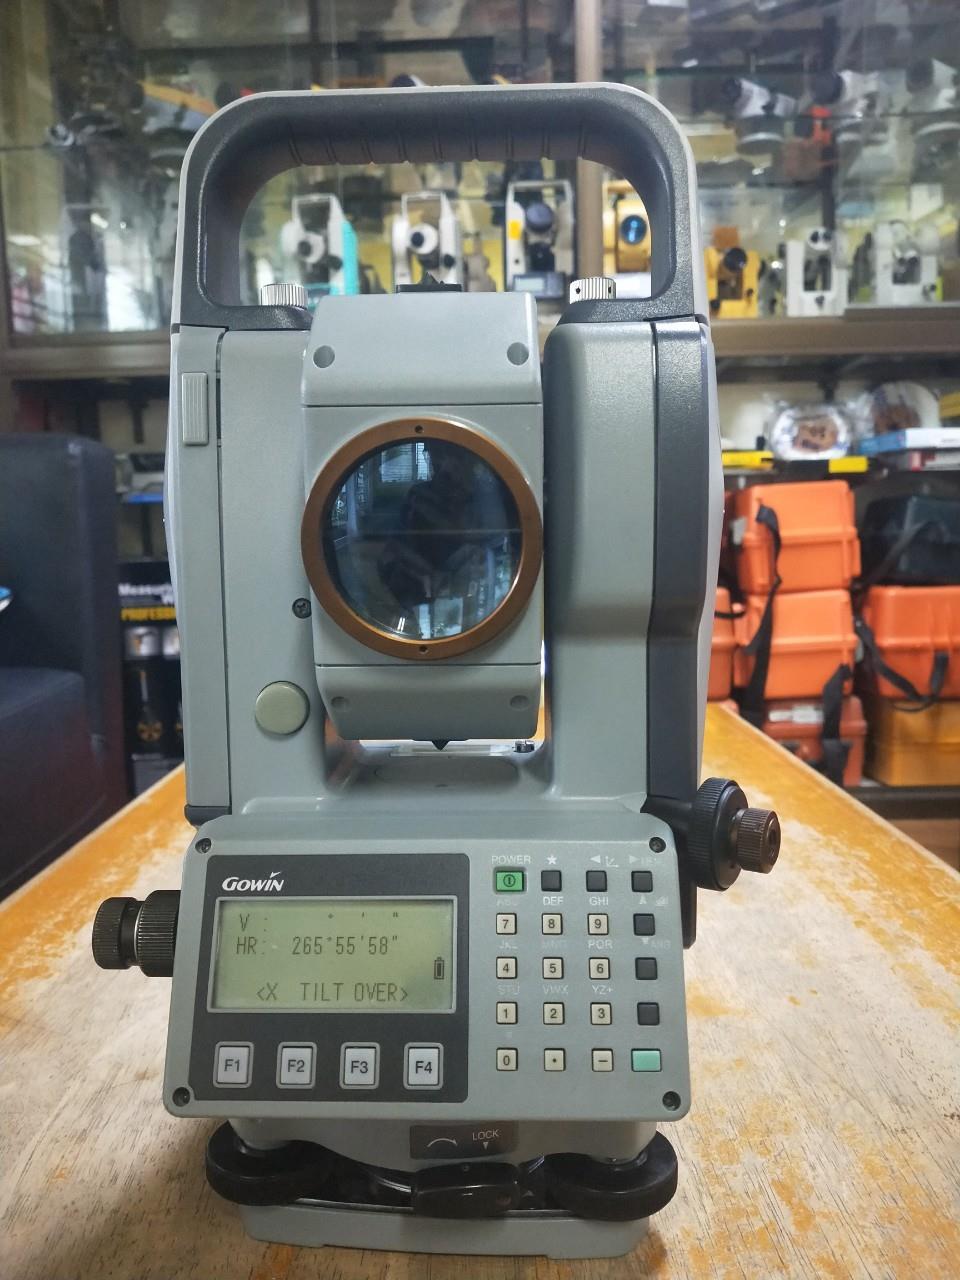 กล้อง Total Station GOWIN TKS-202 มือสอง สภาพ 90%,GPS,เครื่องวัดระยะทางด้วยเลเซอร์,เทปวัดระยะทาง,ล้อวัดระยะทาง,กล้องระดับ,กล้องวัดมุม,กล้องสำรวจ,GOWIN,Instruments and Controls/Instruments and Instrumentation